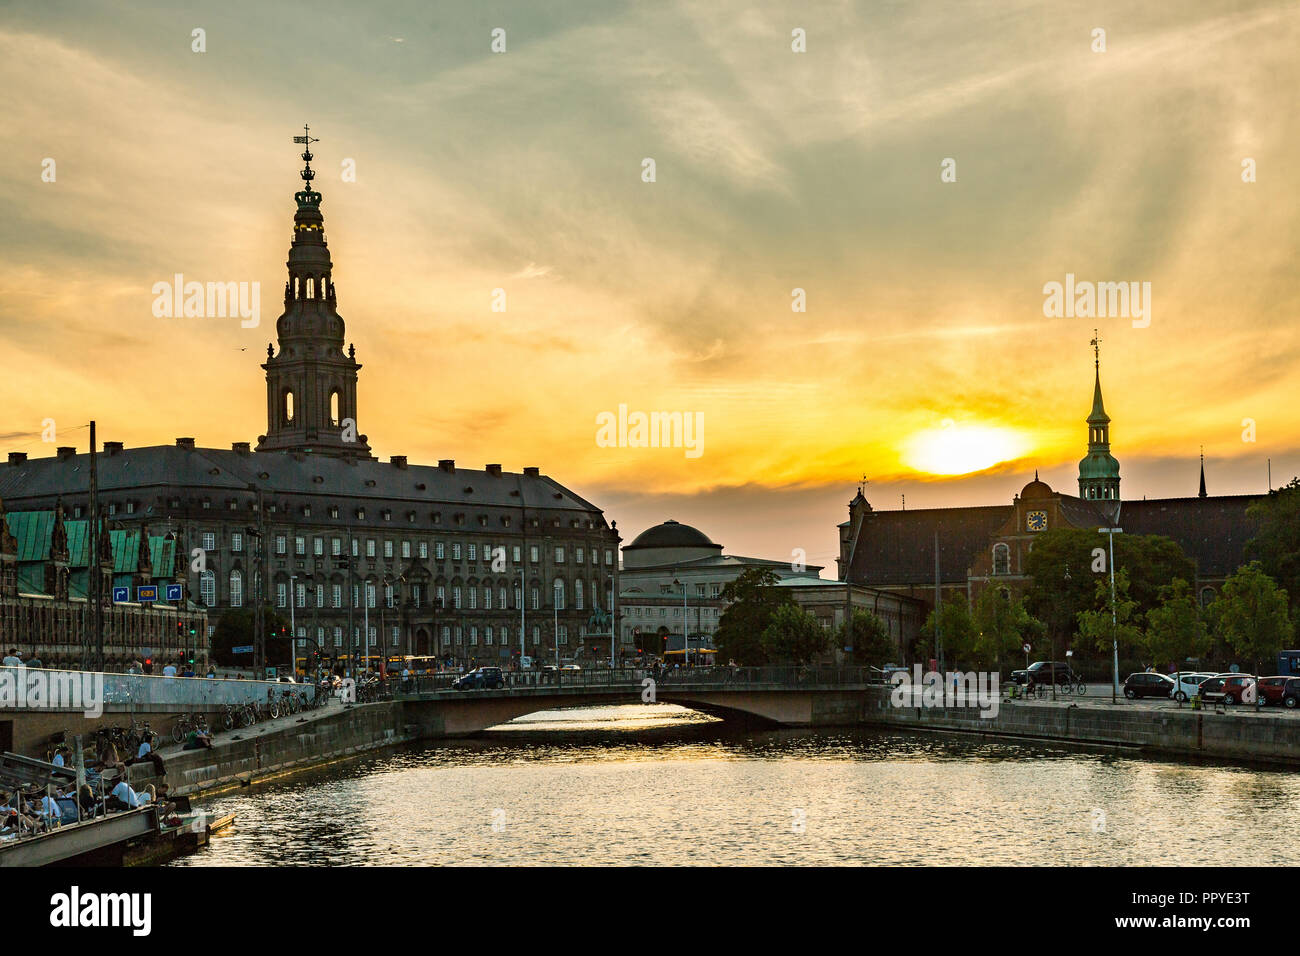 the inner harbor of Copenhagen Stock Photo